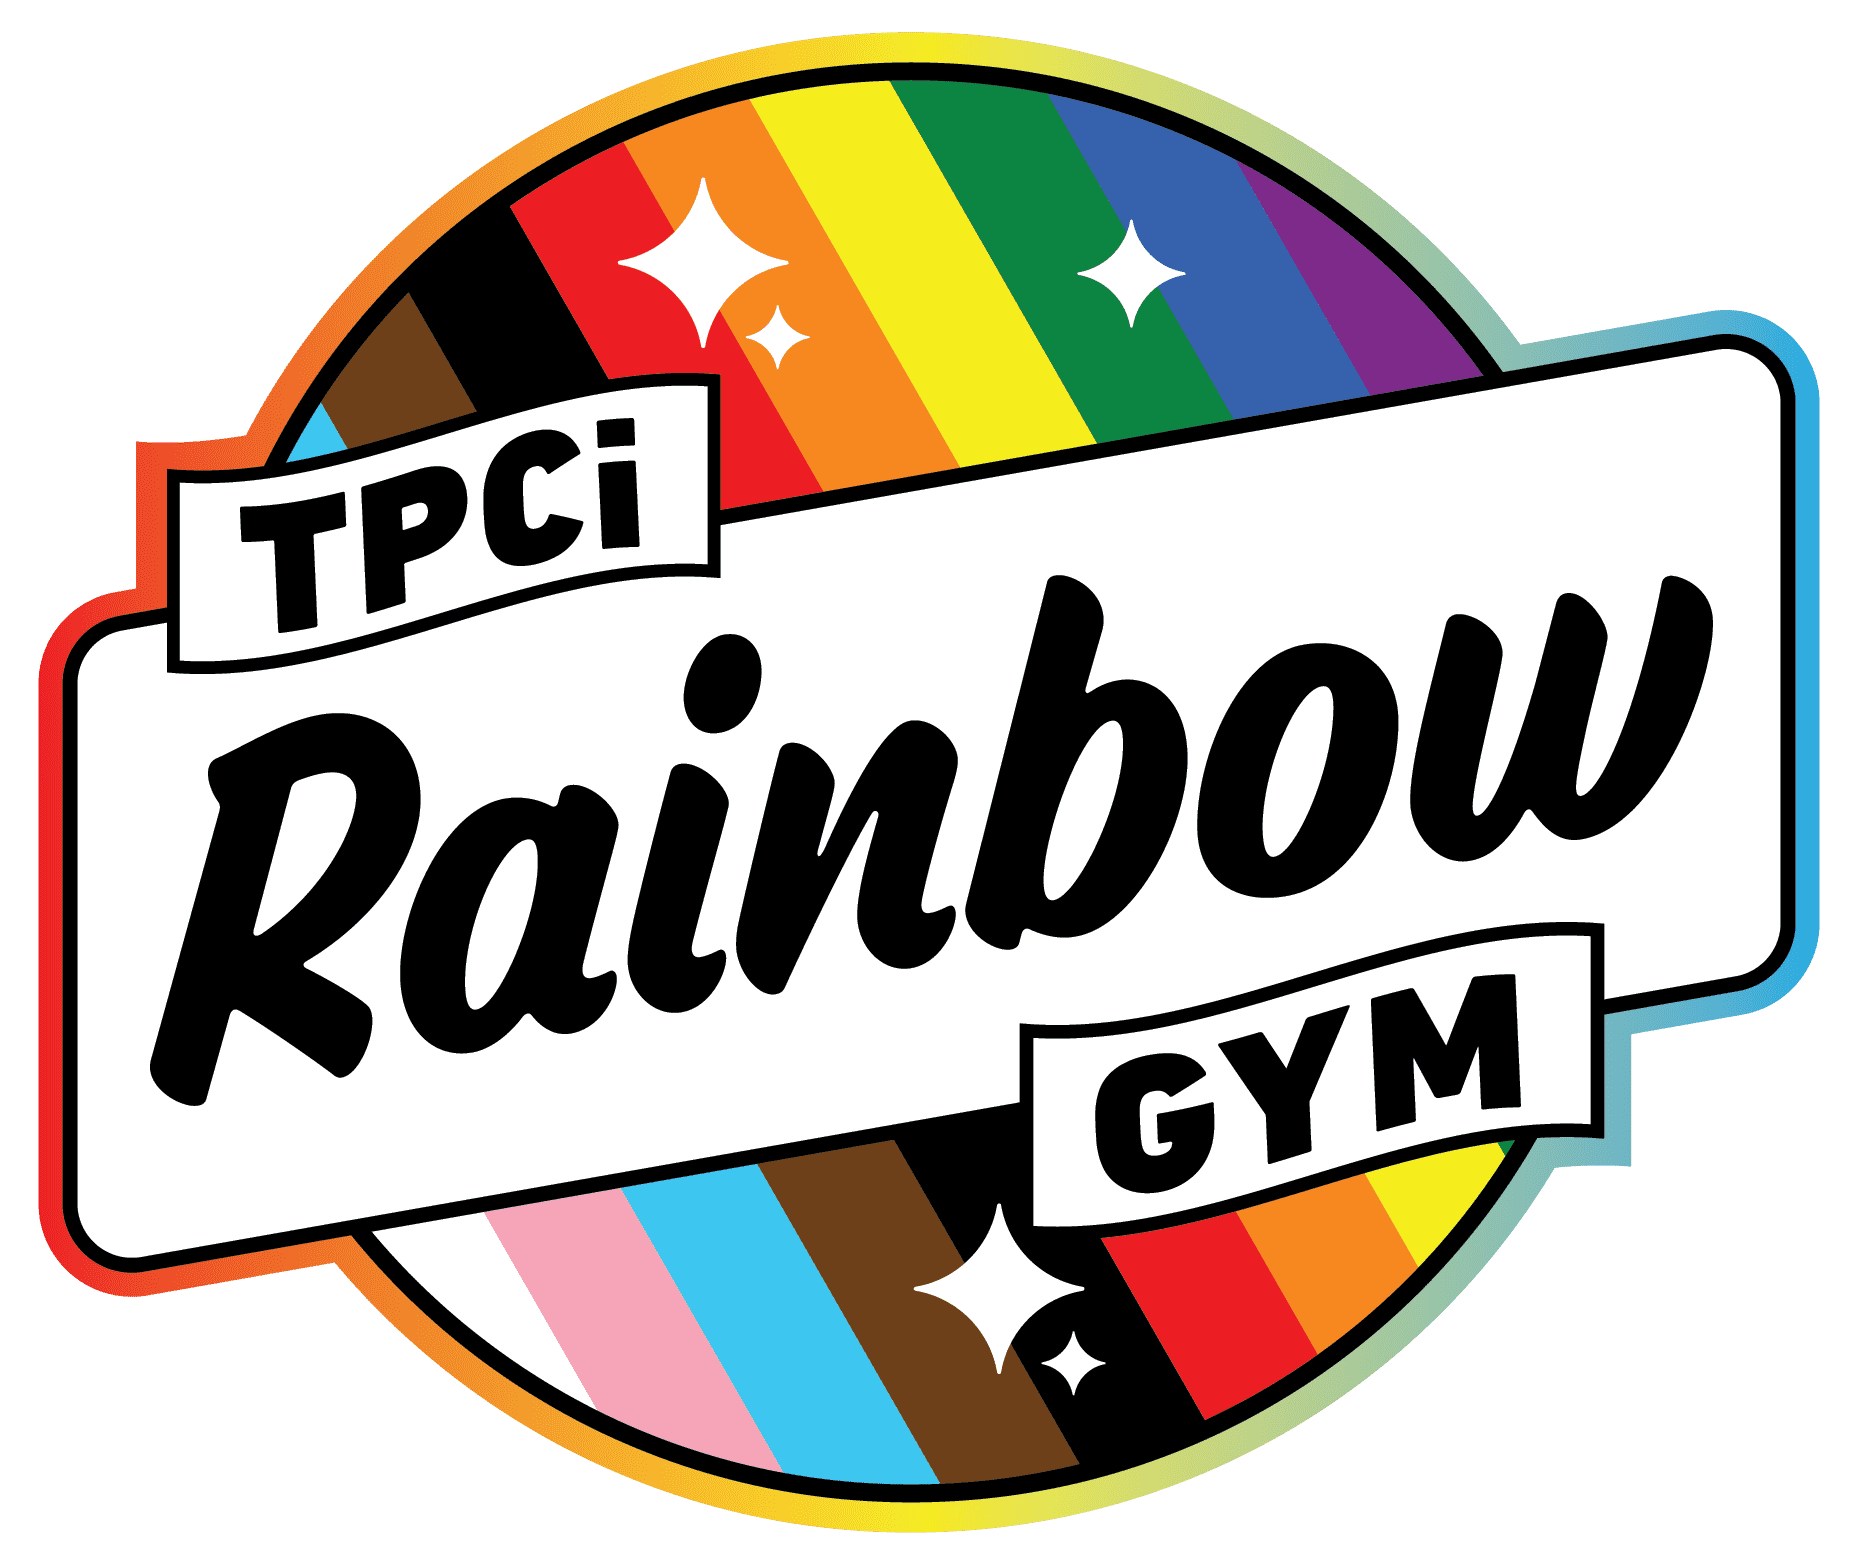 The Rainbow Gym